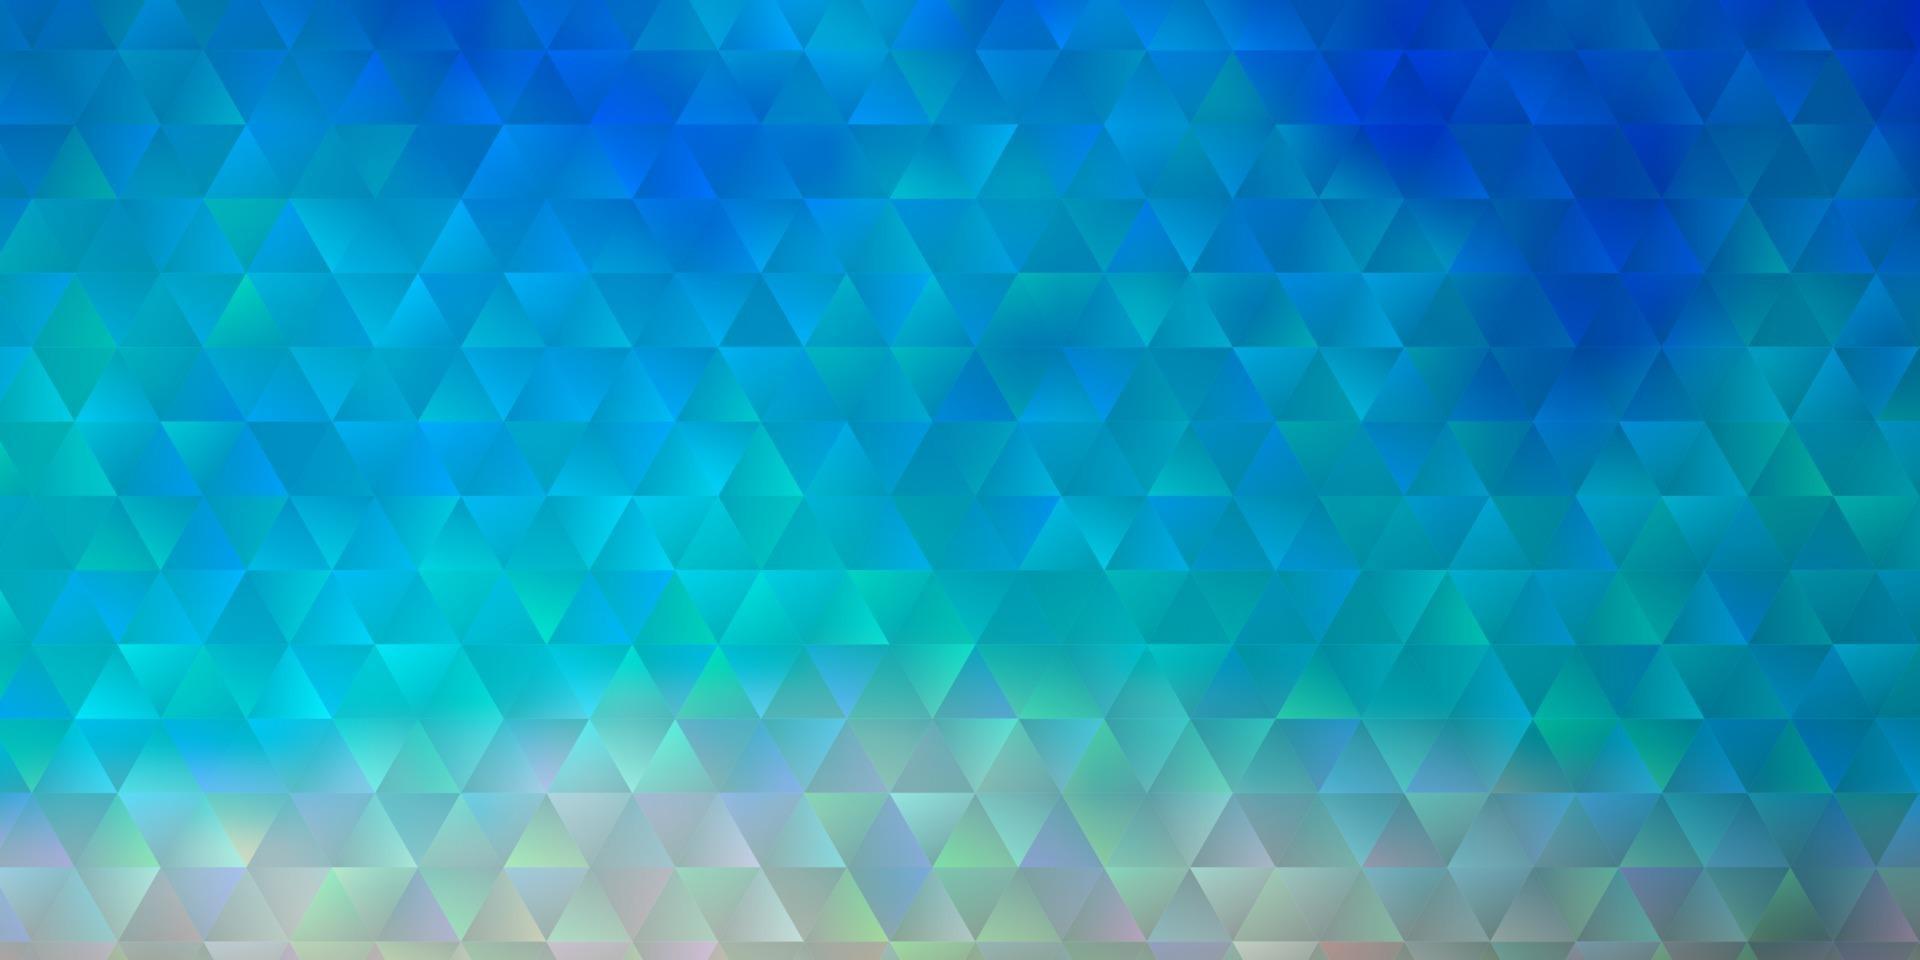 fundo vector azul e amarelo claro com triângulos.